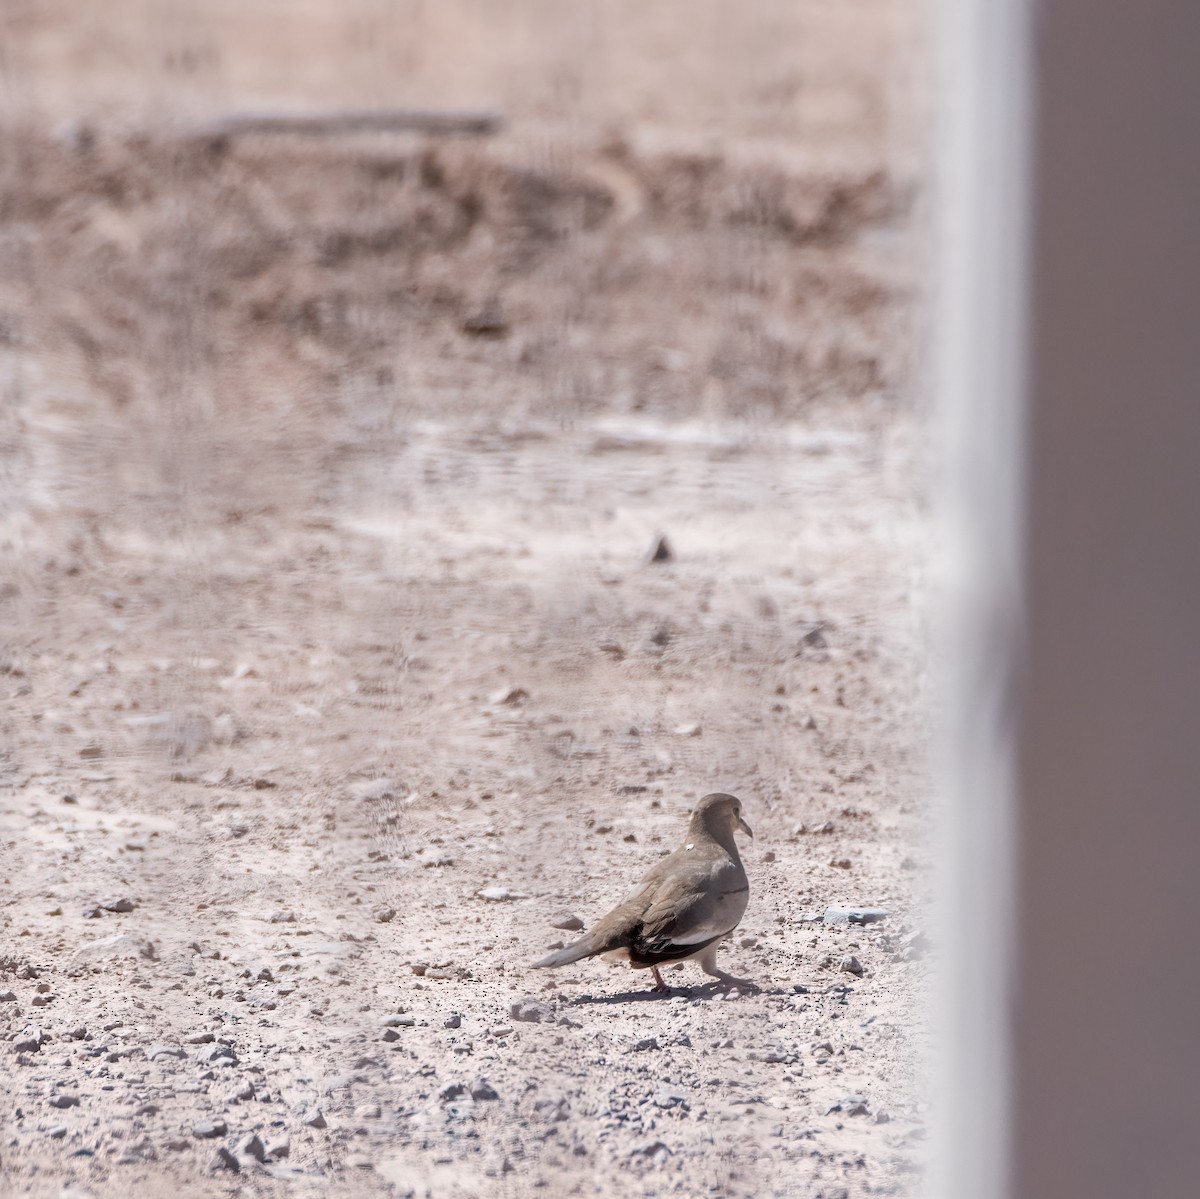 Picui Ground Dove - Esteban Villanueva (Aves Libres Chile)